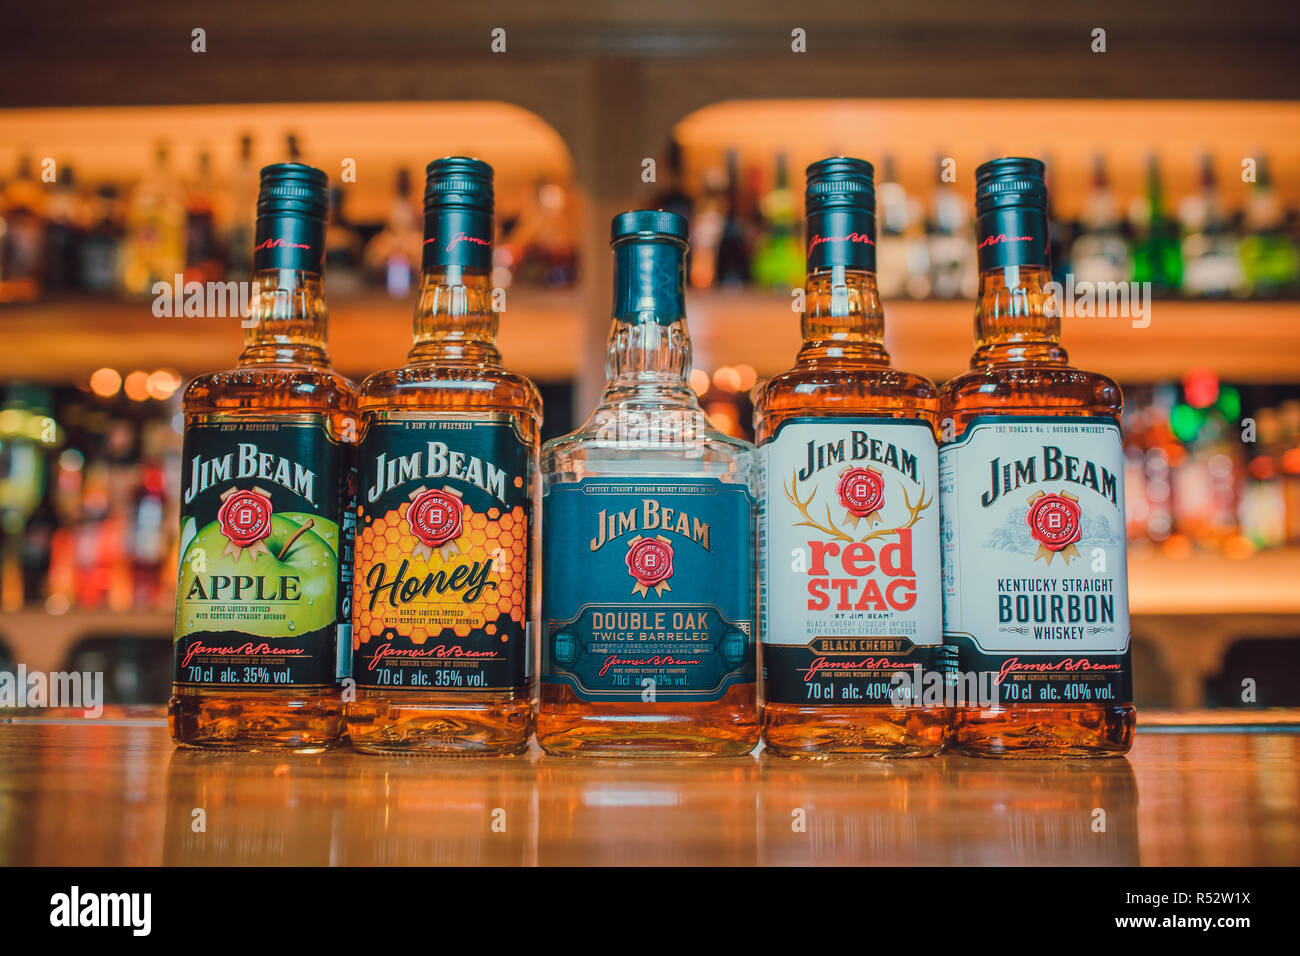 Ufa, Russia, Darling Bar, 20 Novembre, 2018: Jim Beam Kentucky Bourbon whiskey su scaffale del negozio. Jim Beam è una marca di whiskey Bourbon. Foto Stock